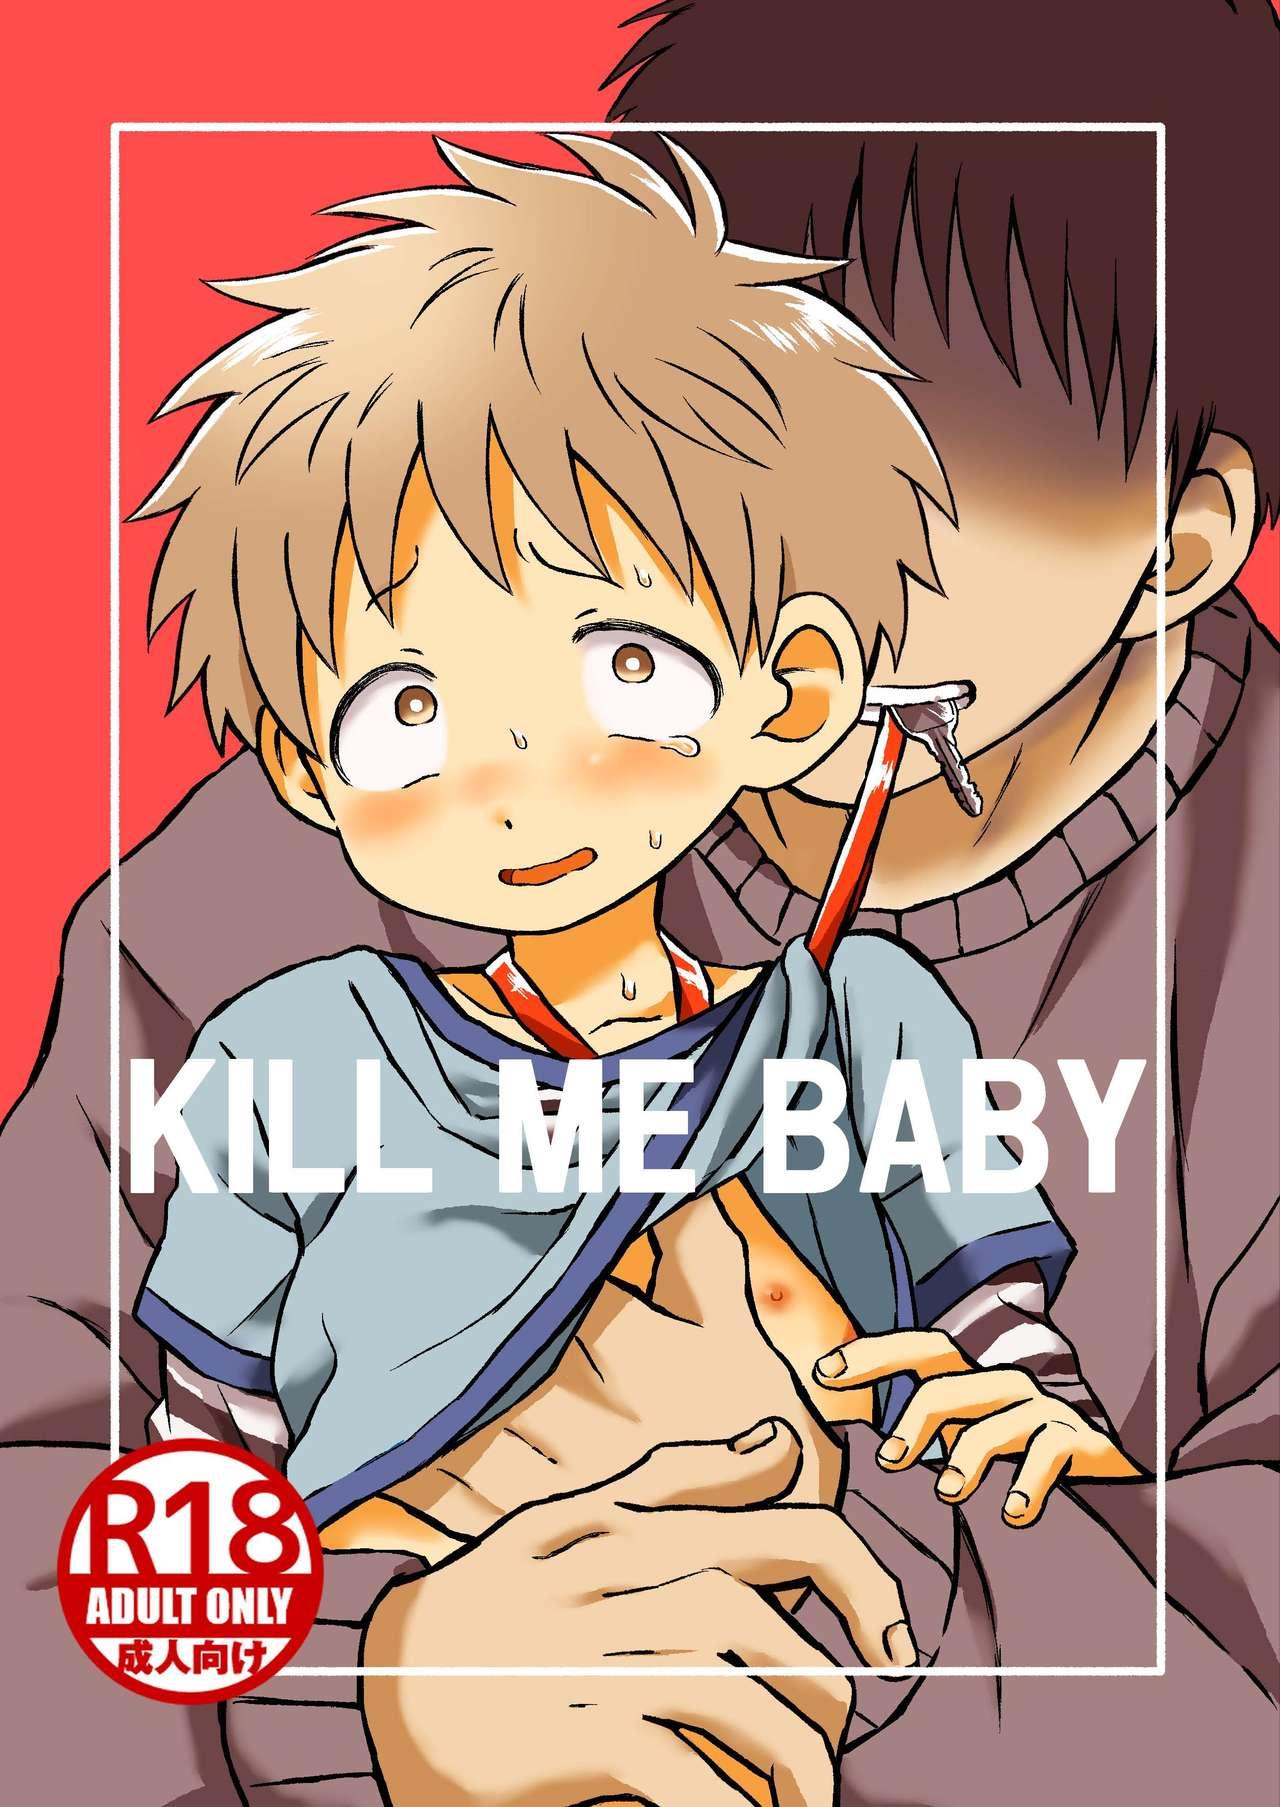 KILL ME BABY 0